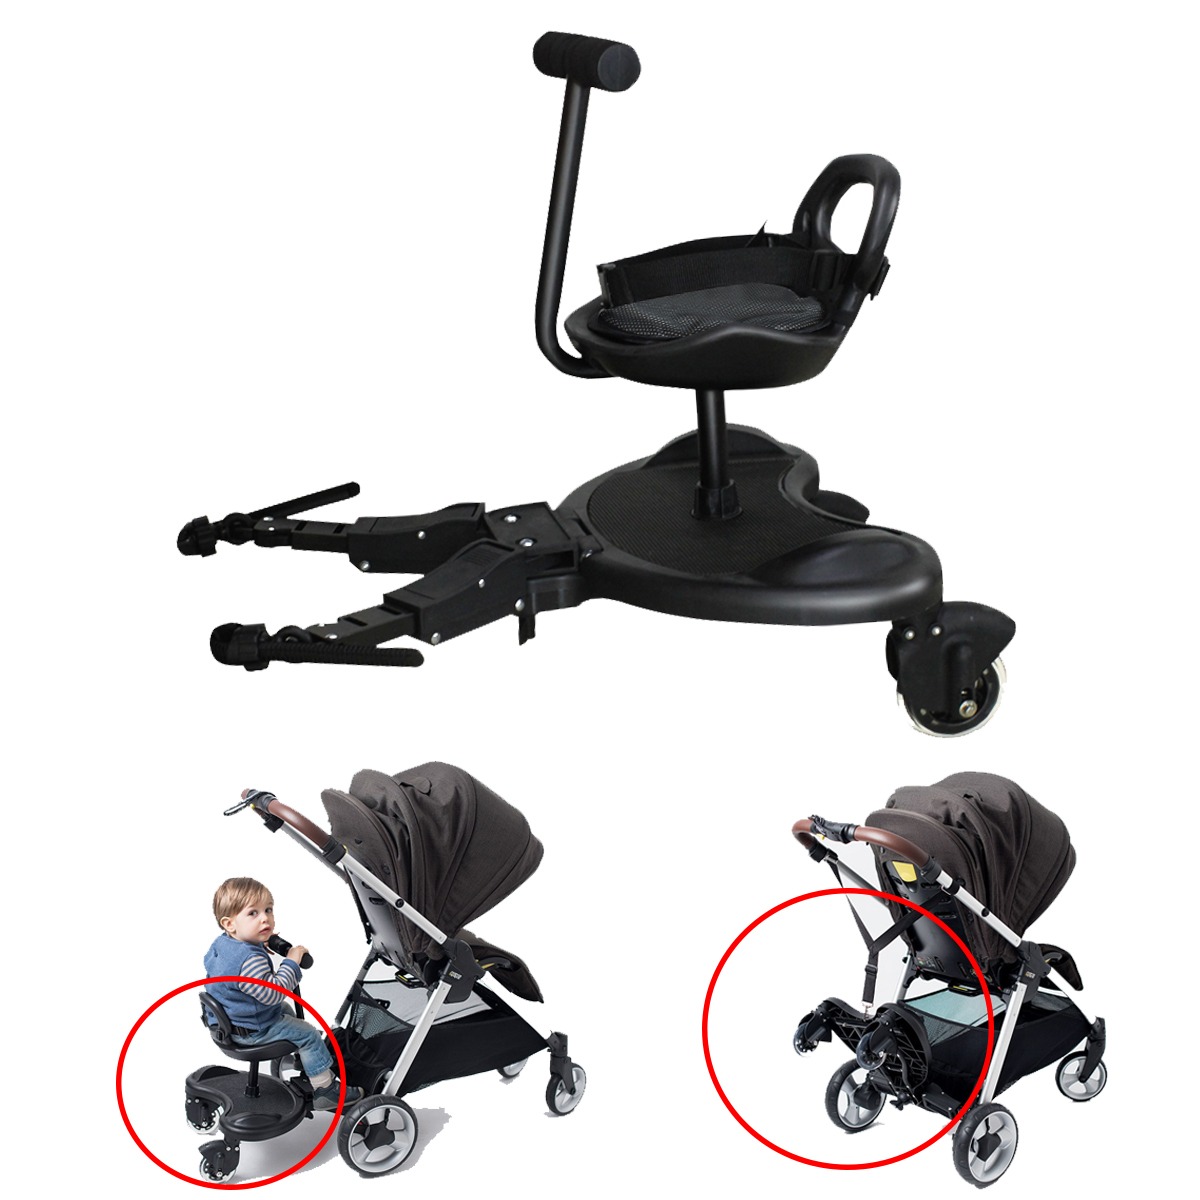 Carrello универсальная подножка на коляску для второго ребенка Kiddy Board